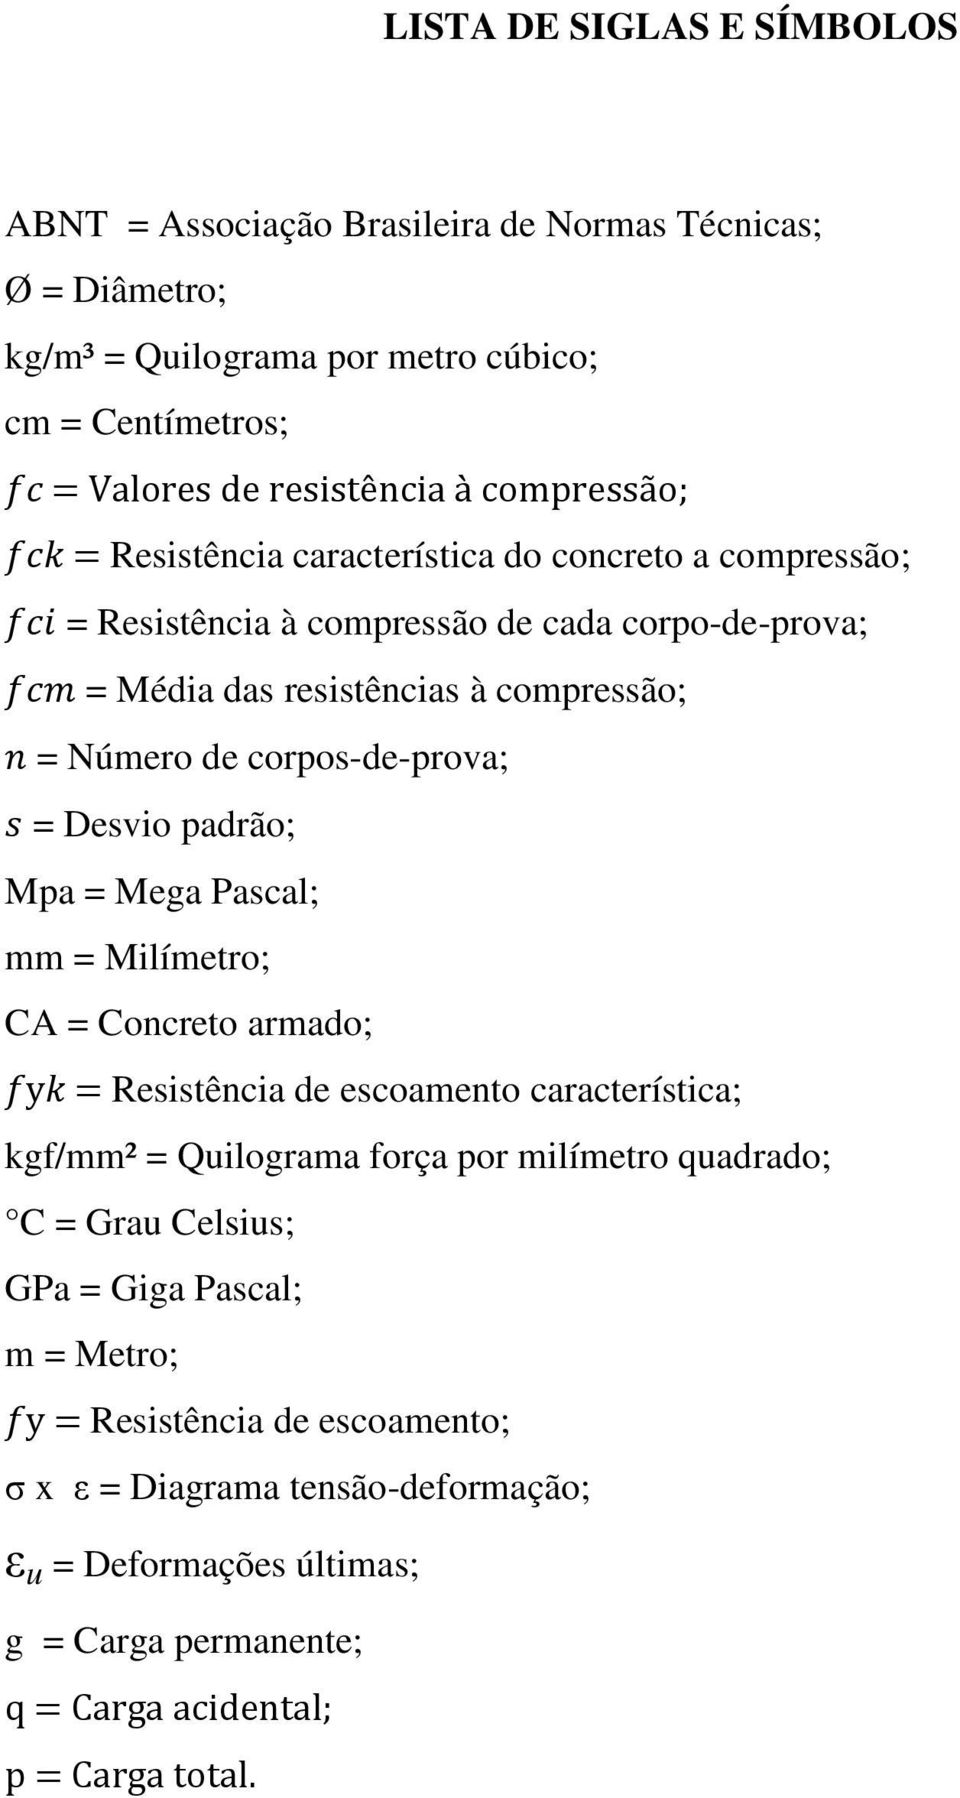 corpos-de-prova; = Desvio padrão; Mpa = Mega Pascal; mm = Milímetro; CA = Concreto armado; = Resistência de escoamento característica; kgf/mm² = Quilograma força por milímetro